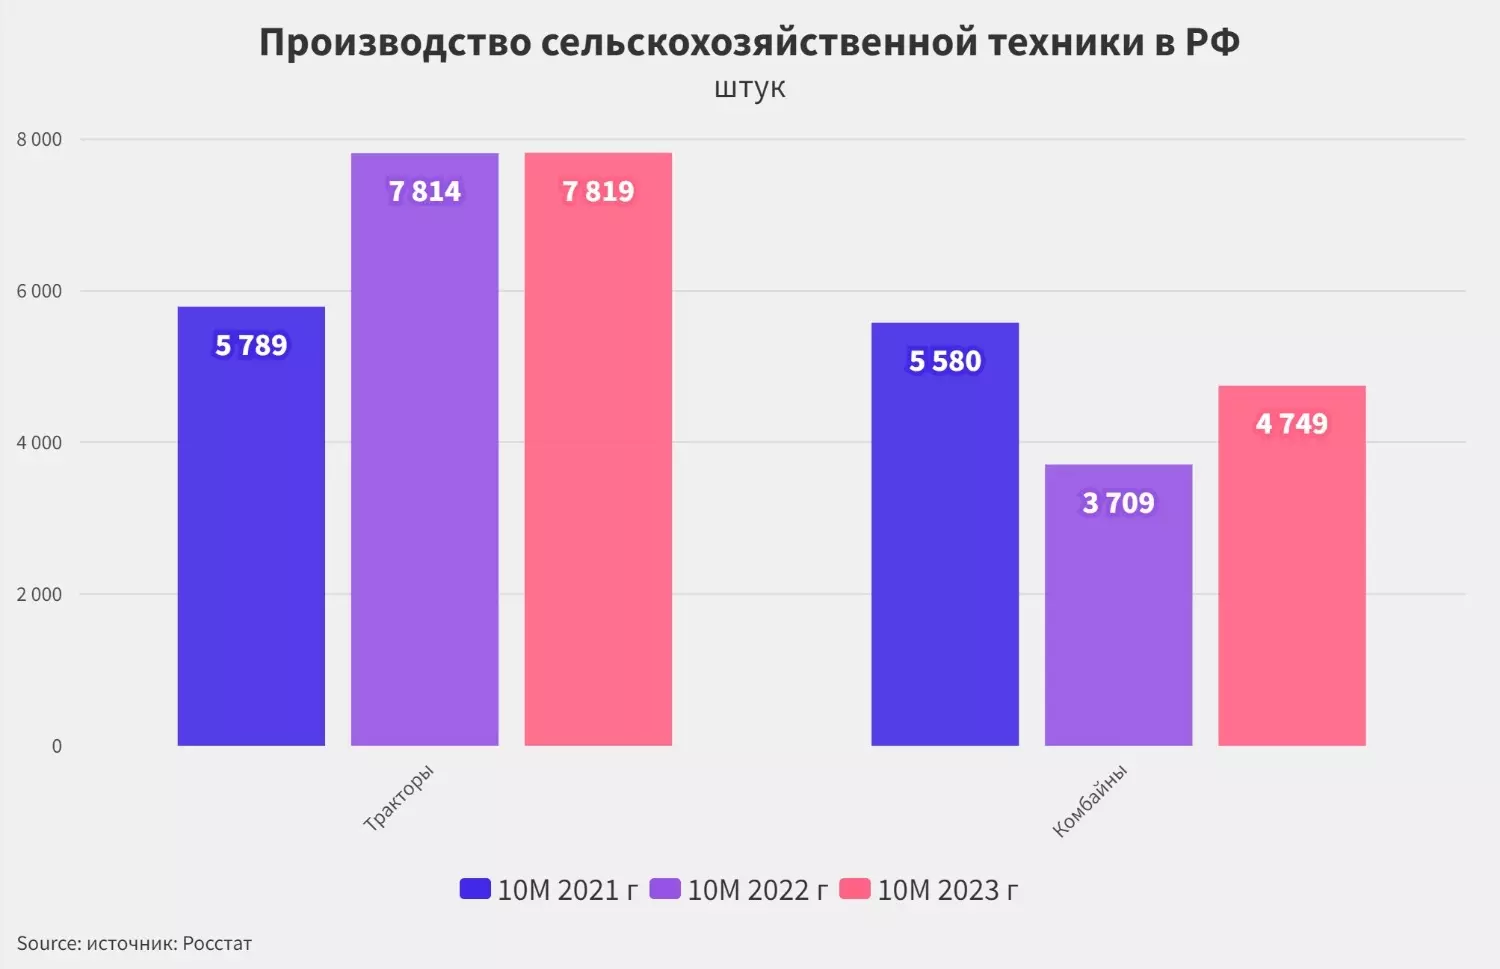 Производство тракторов в РФ растет, а комбайнов - падает